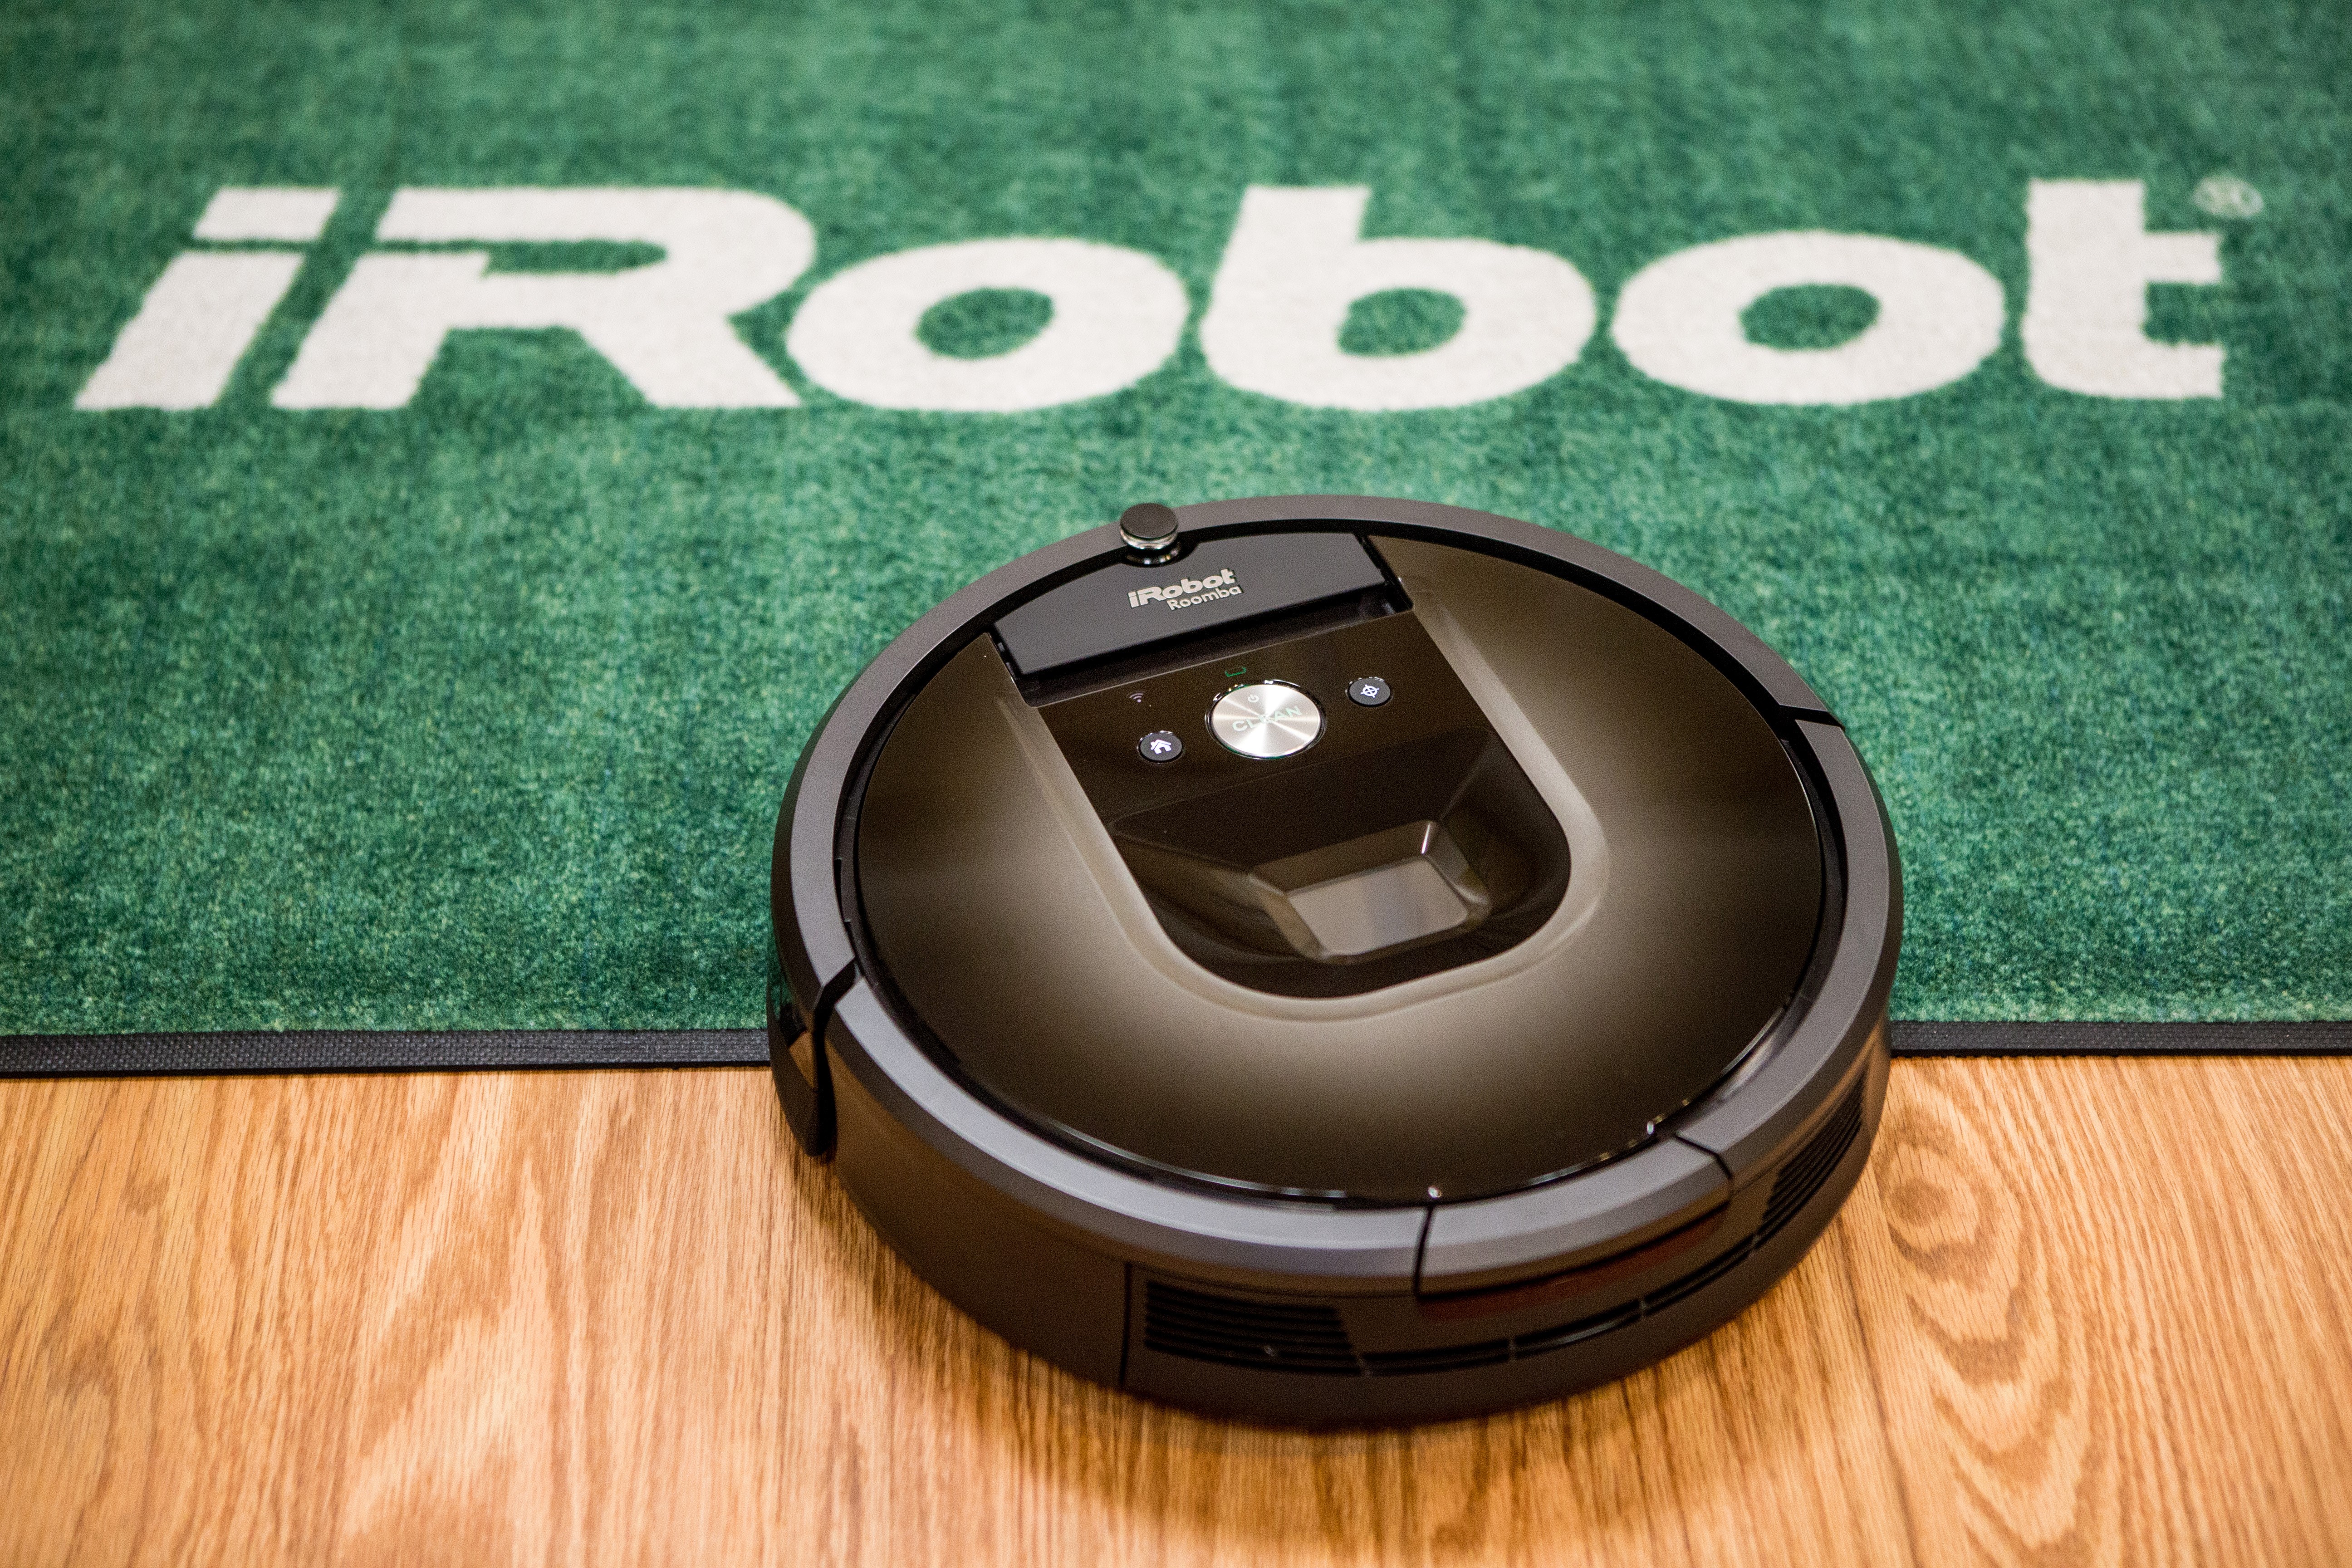 Реклама робота пылесоса. Айробот пылесос Румба 606. Робот-пылесос IROBOT Roomba Corporation. Робот-пылесос IROBOT Roomba Corporation 2002-2007. Робот пылесос Айробот Румба первый.